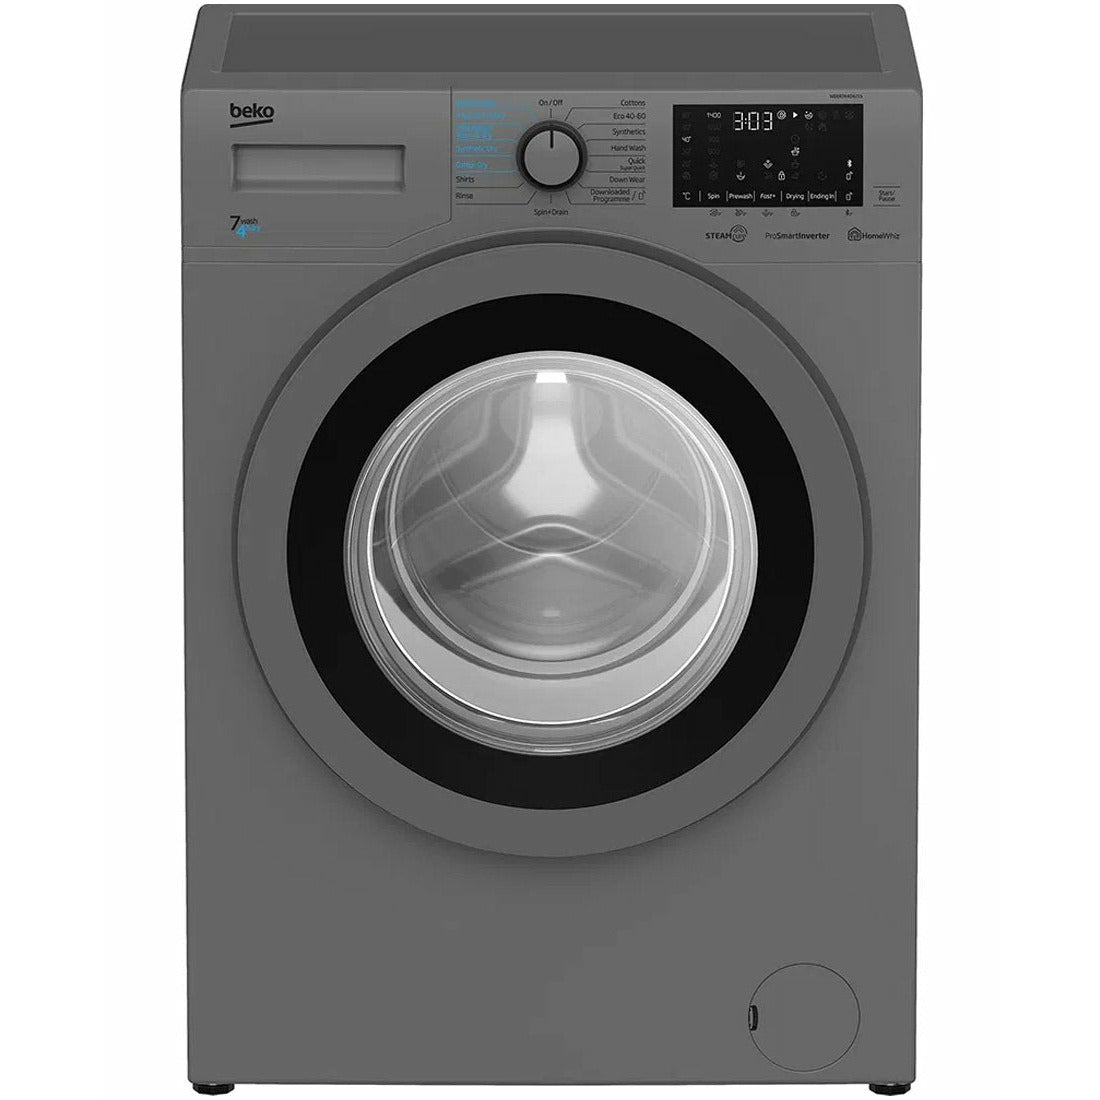 Beko 7kg/5kg Washer Dryers | WDER7440421S